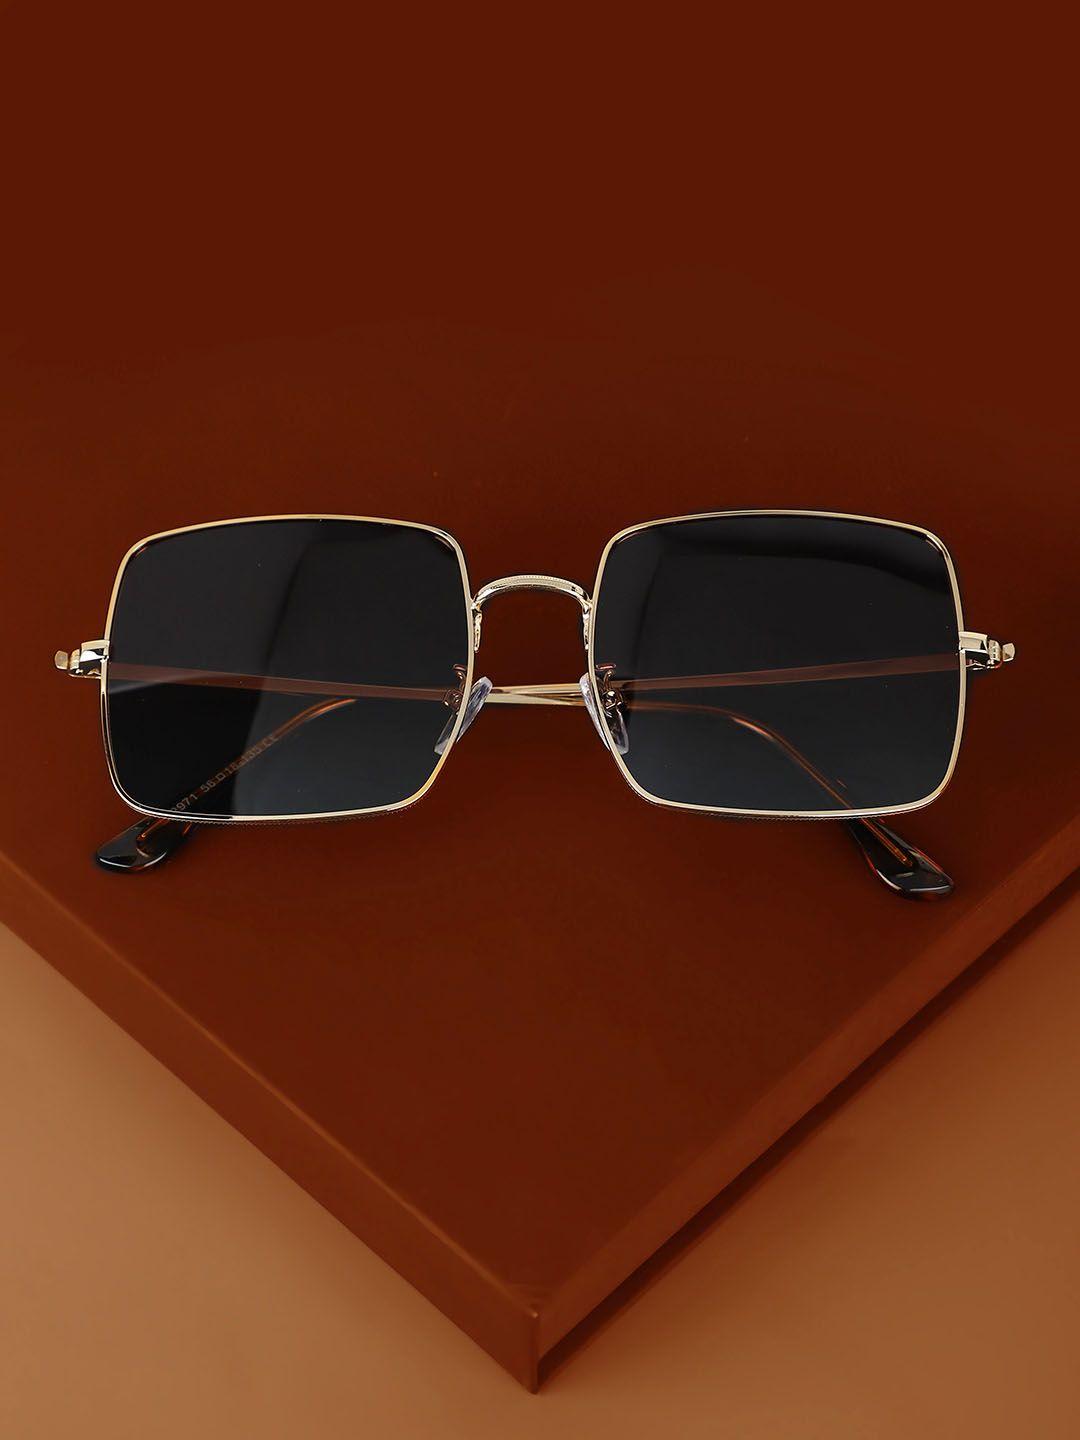 carlton-london-premium-men-polarised-&-uv-protected-lens-square-sunglasses---clsm140